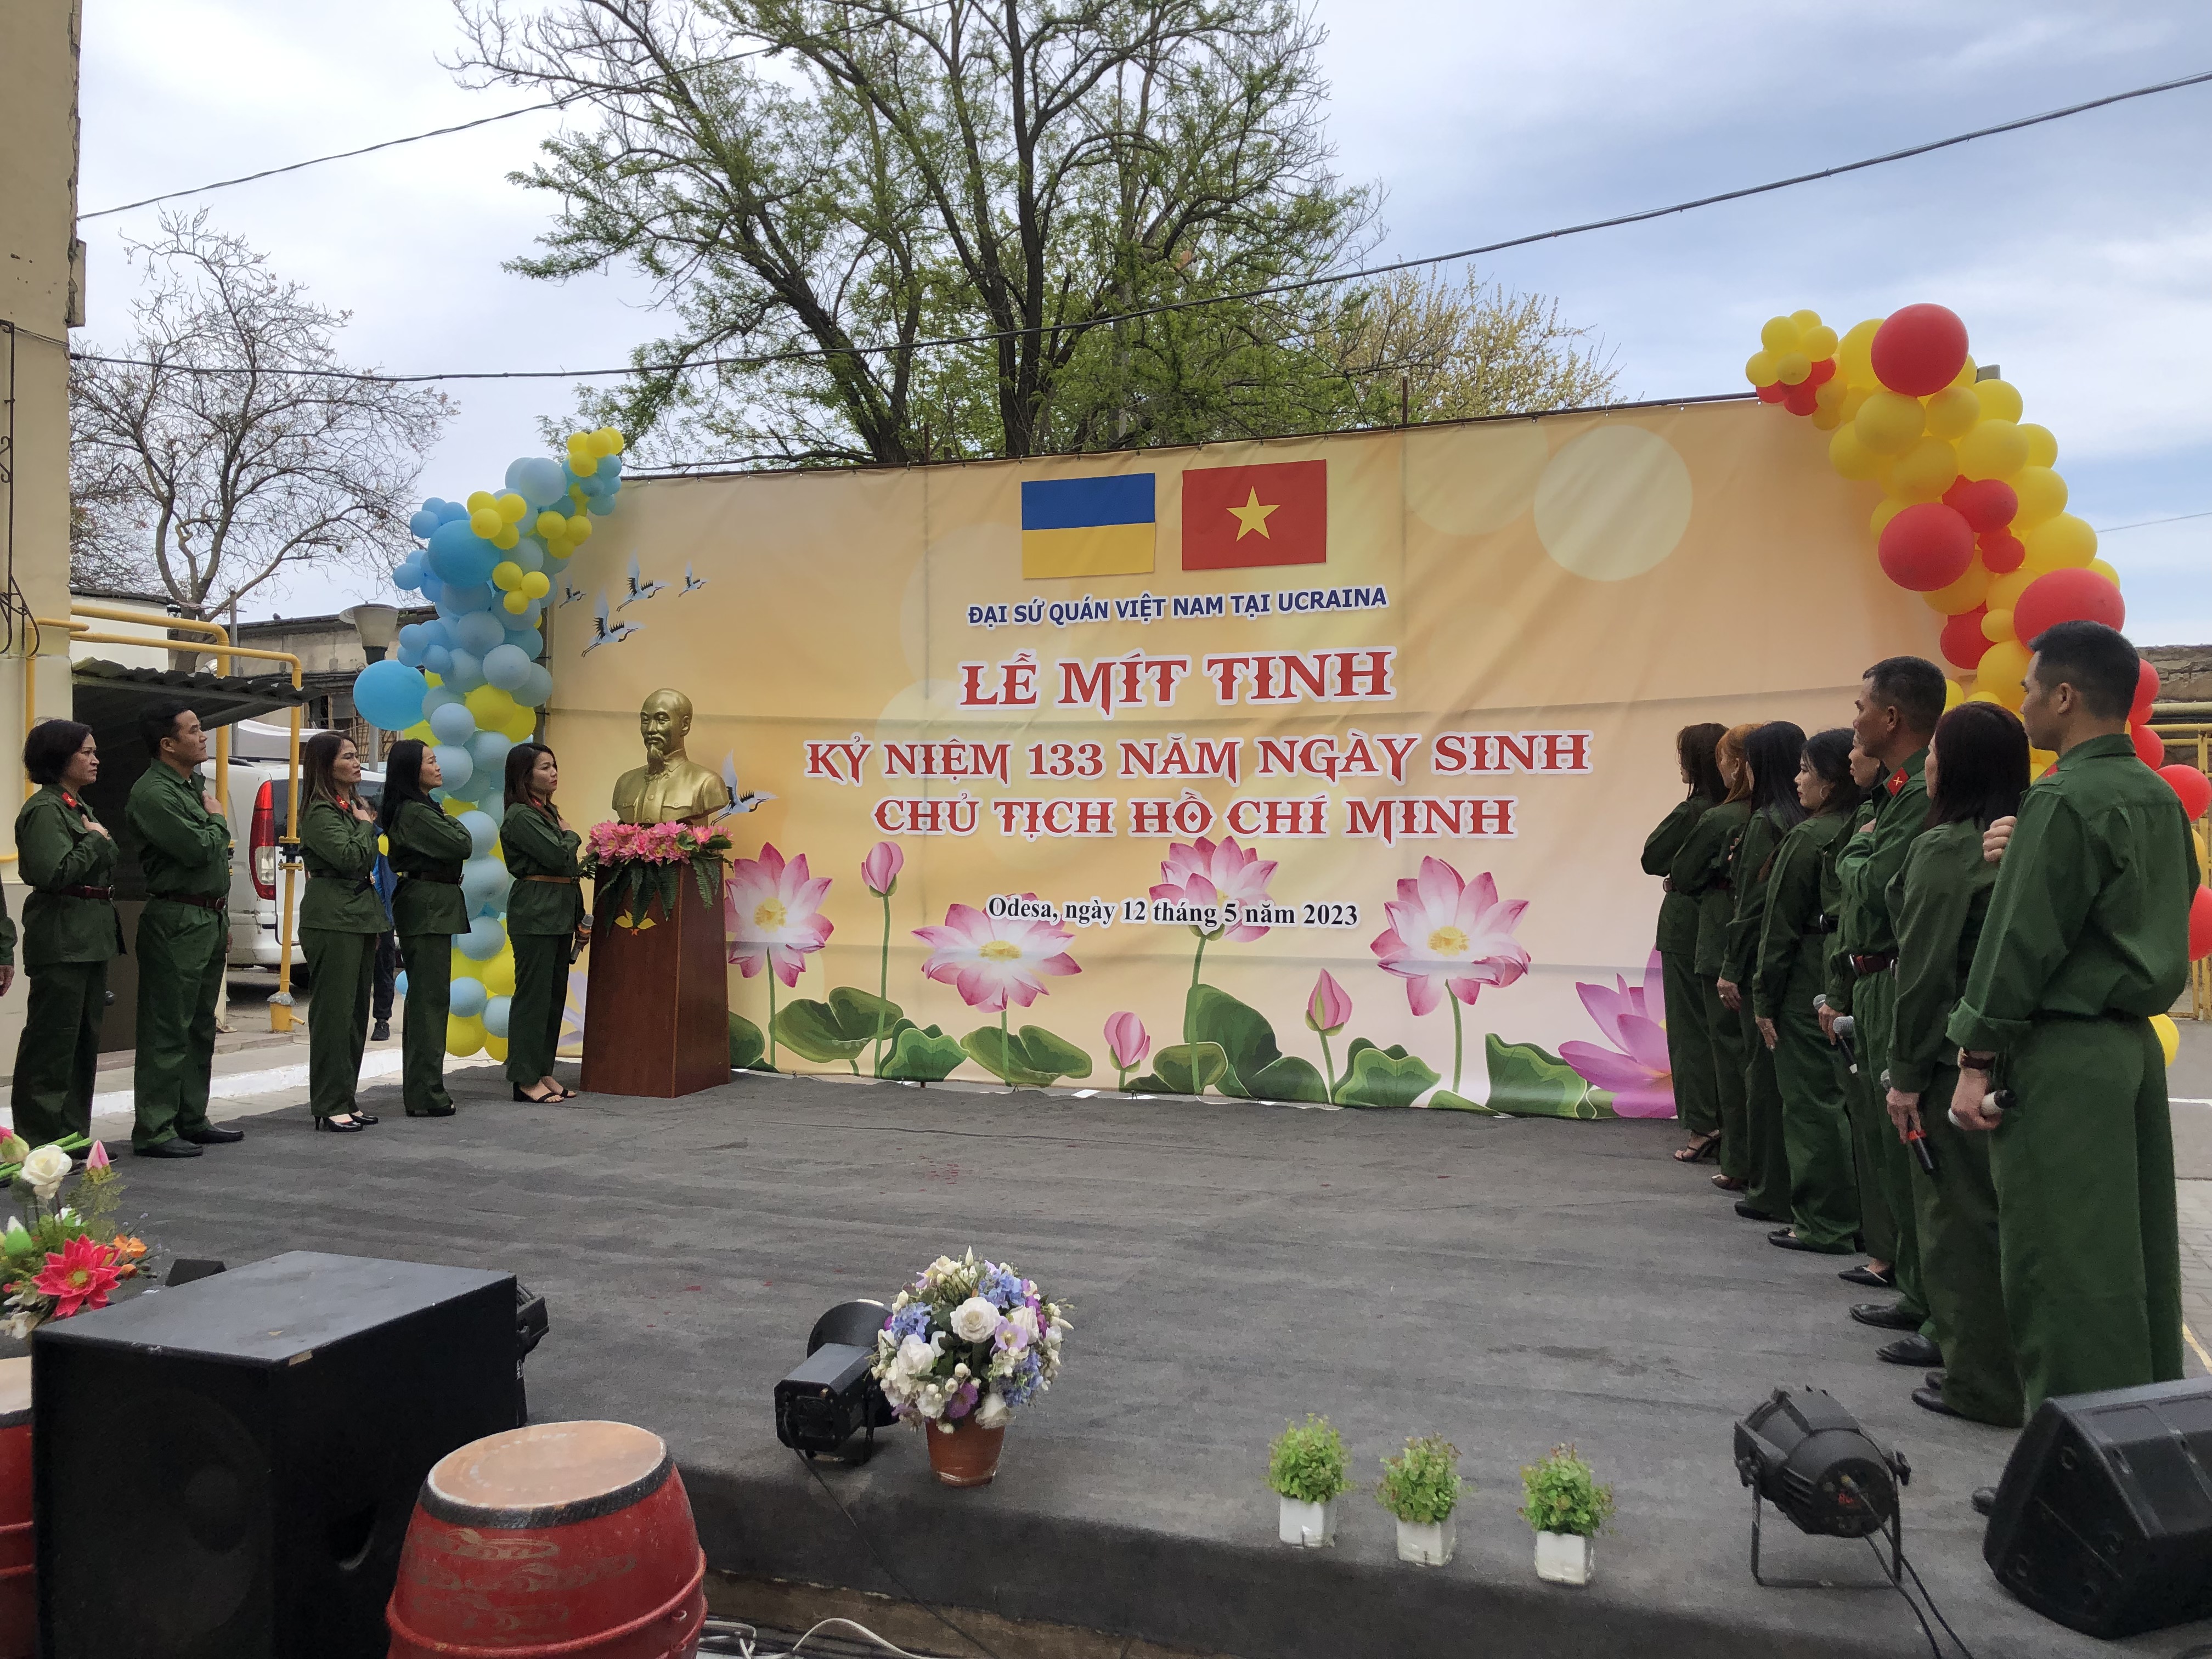 Lễ mit tinh kỷ niệm 133 năm ngày sinh Chủ tịch Hồ Chí Minh tại Odesa